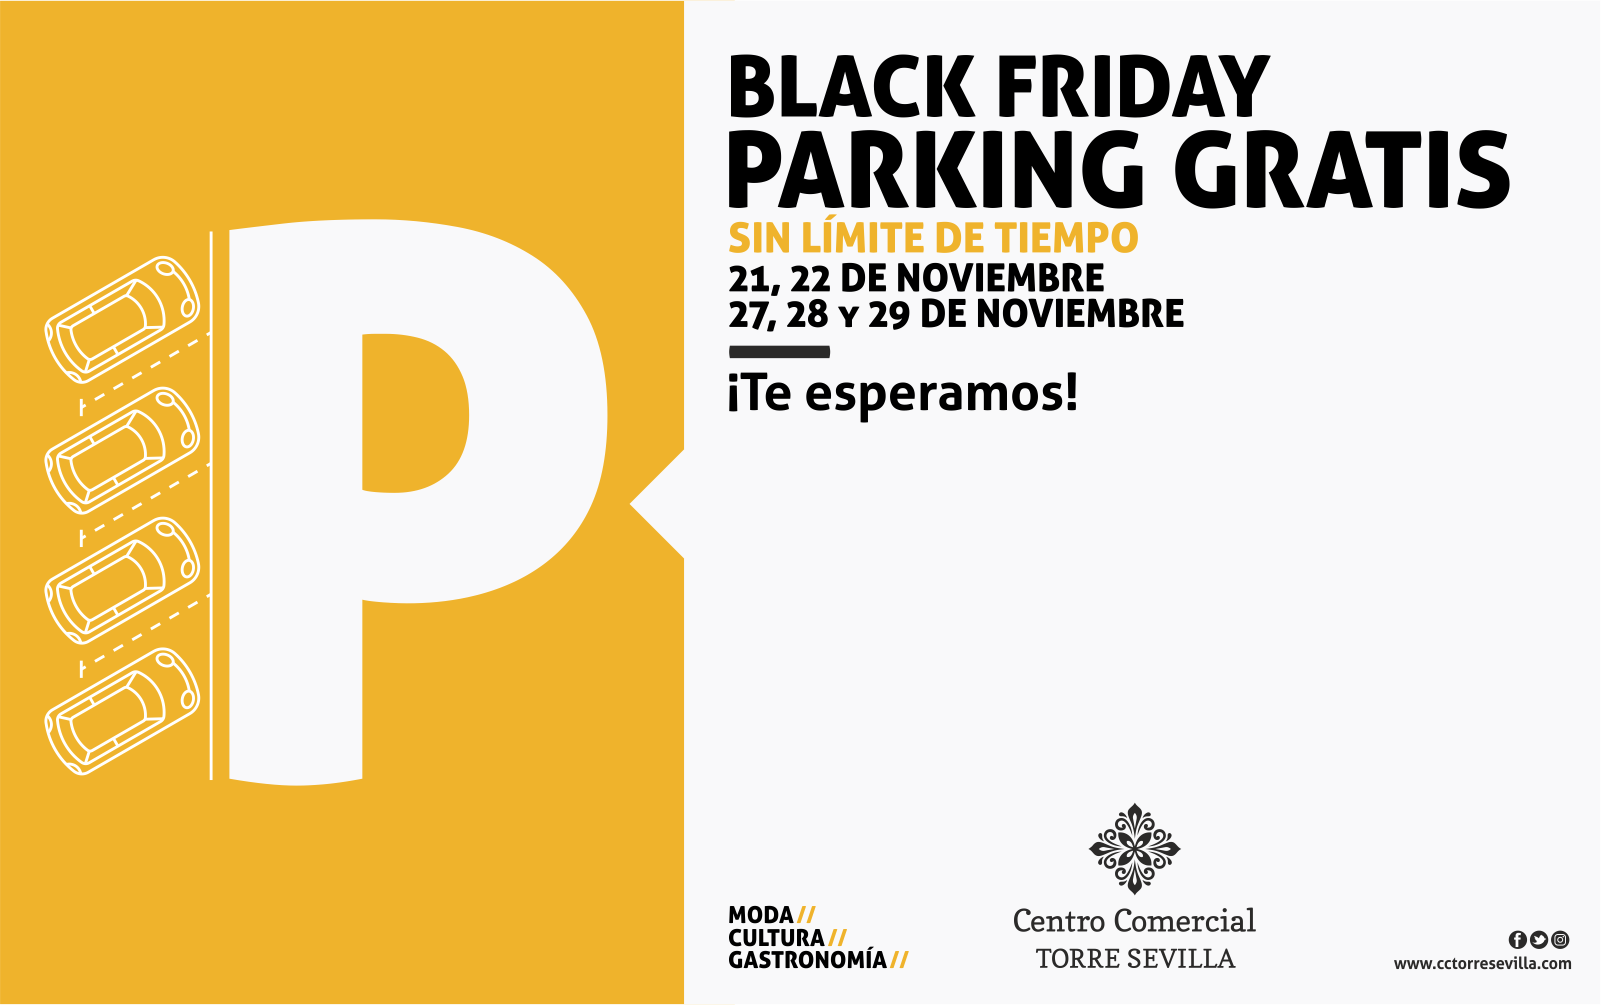 Parking Gratuito – Especial ¨Black Friday¨ 